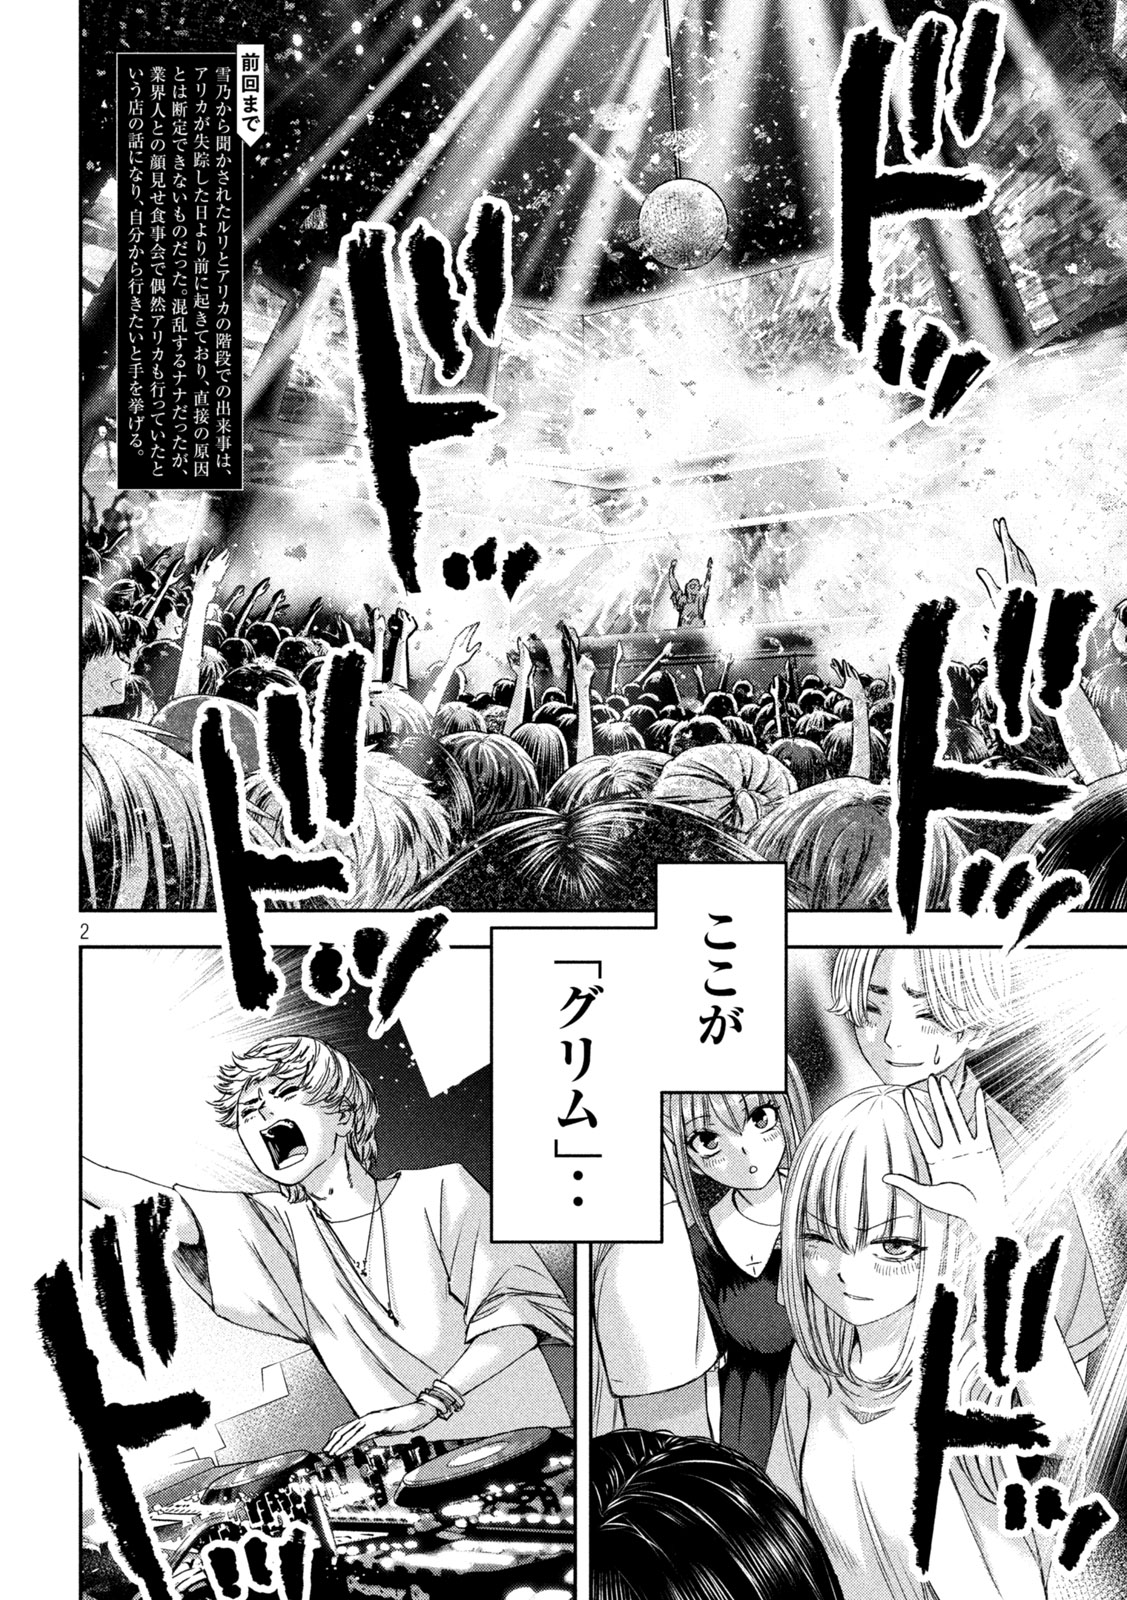 Watashi no Arika - Chapter 42 - Page 2